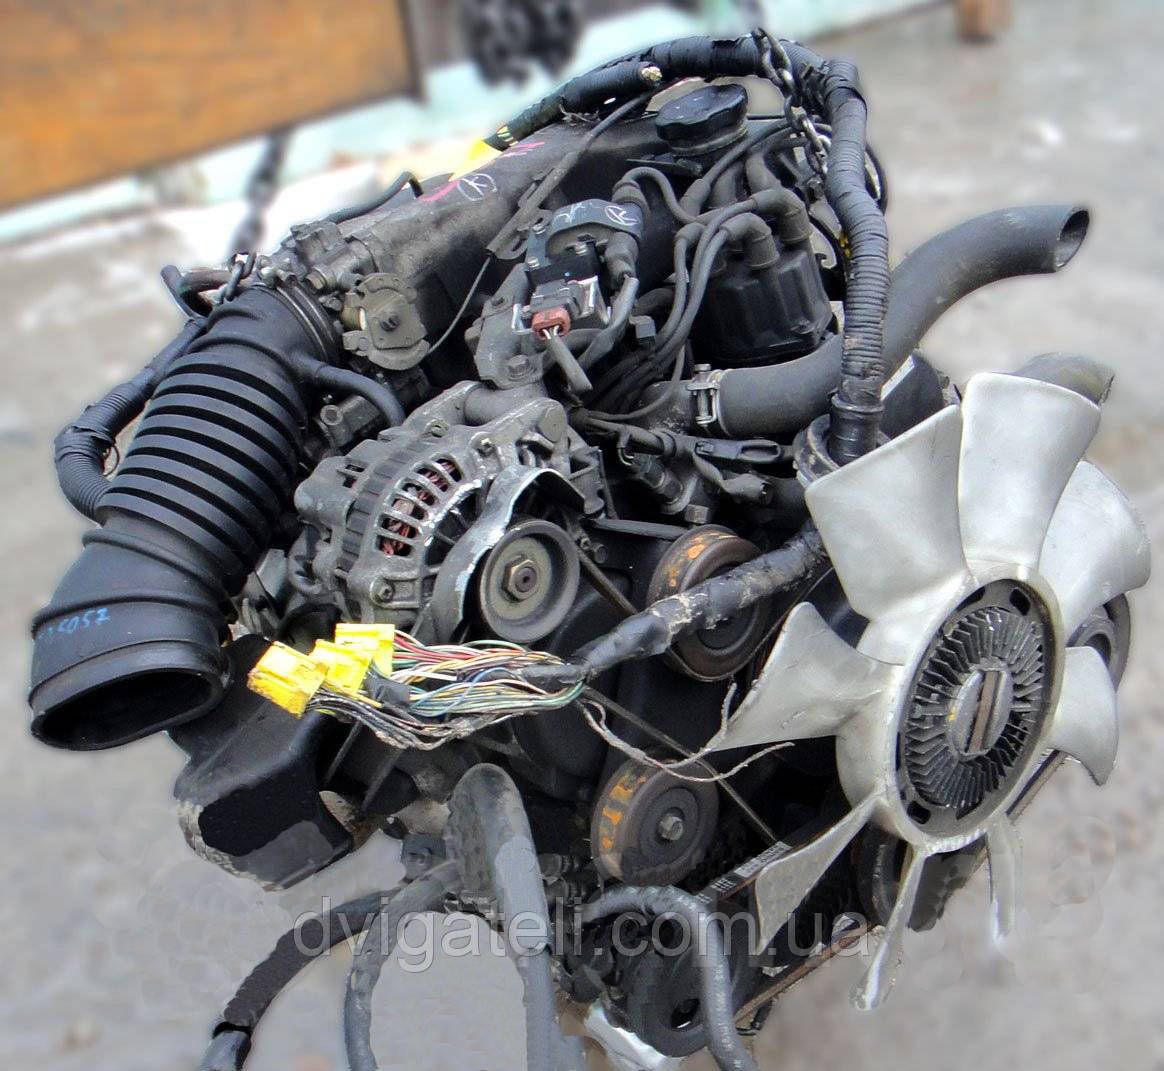 Контрактные мицубиси. Мотор 6g72. Двигатель Mitsubishi 6g72 SOHC 12v. 6g72 12. 6g72 12 клапанов.